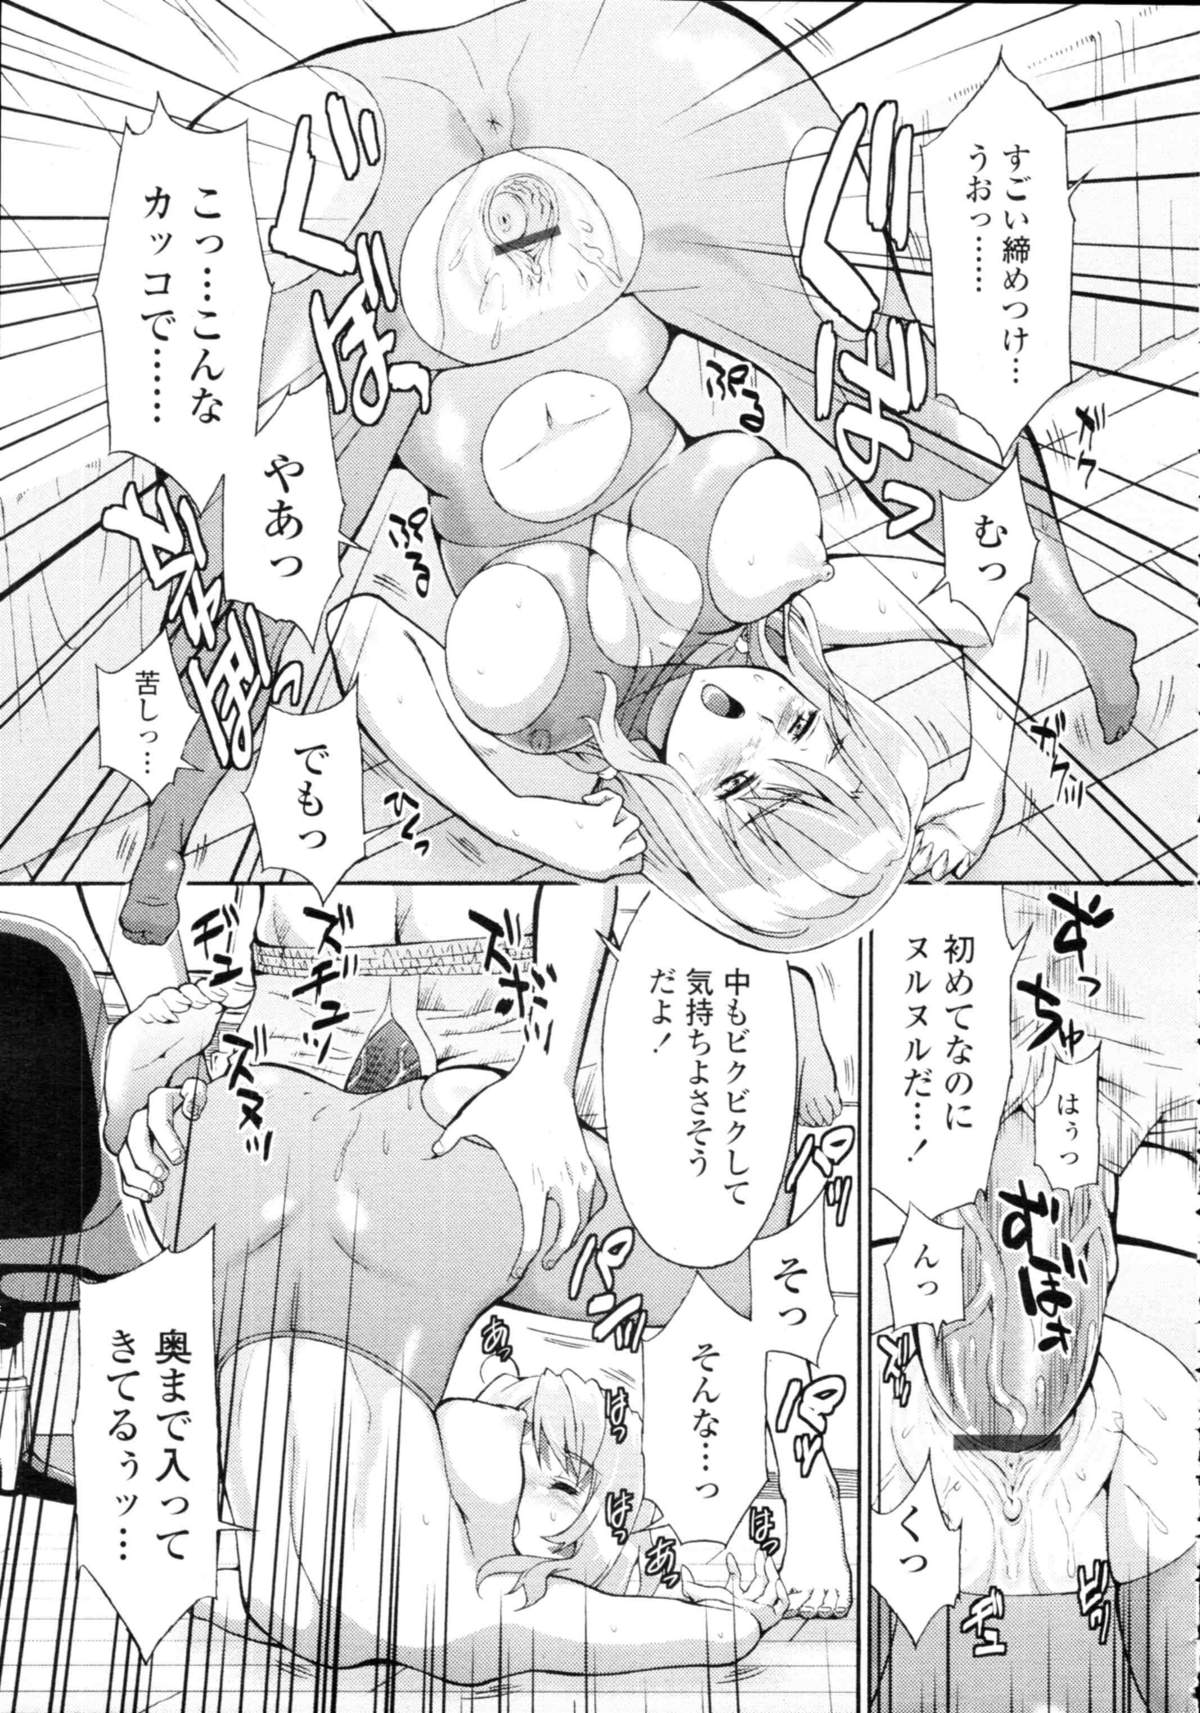 COMIC天魔 コミックテンマ 2009年9月号 VOL.136